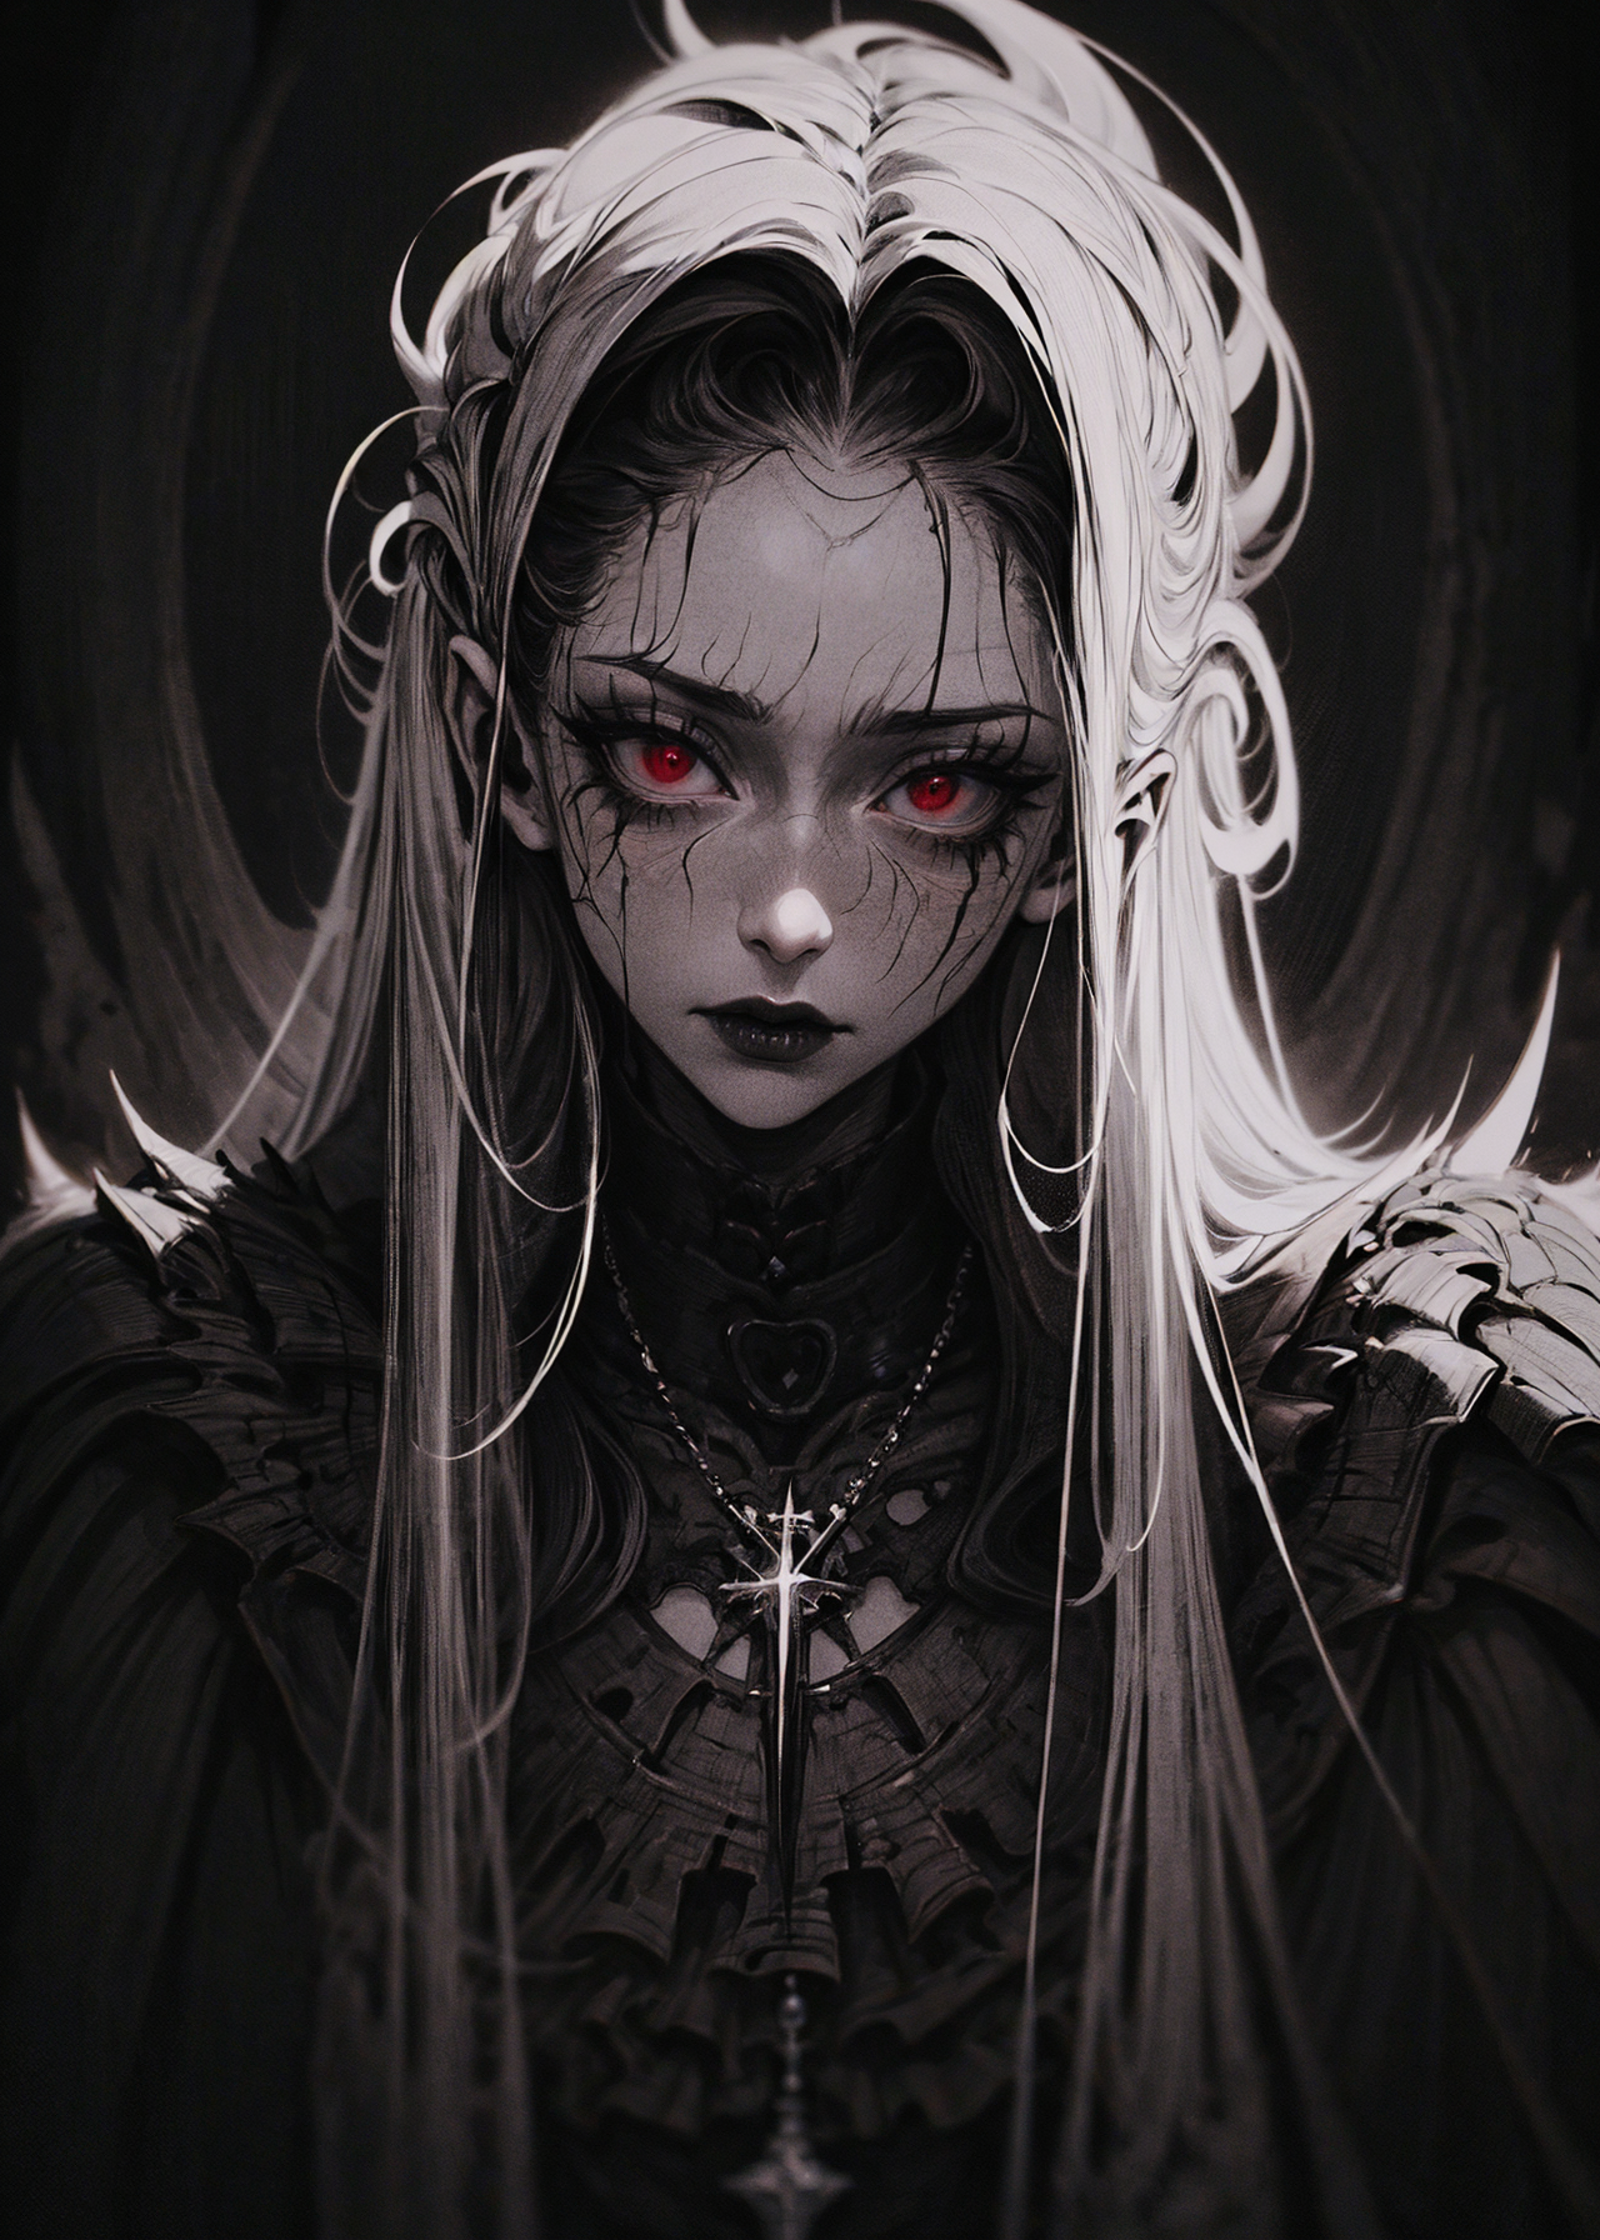 Gothic Girl image by 0_vortex